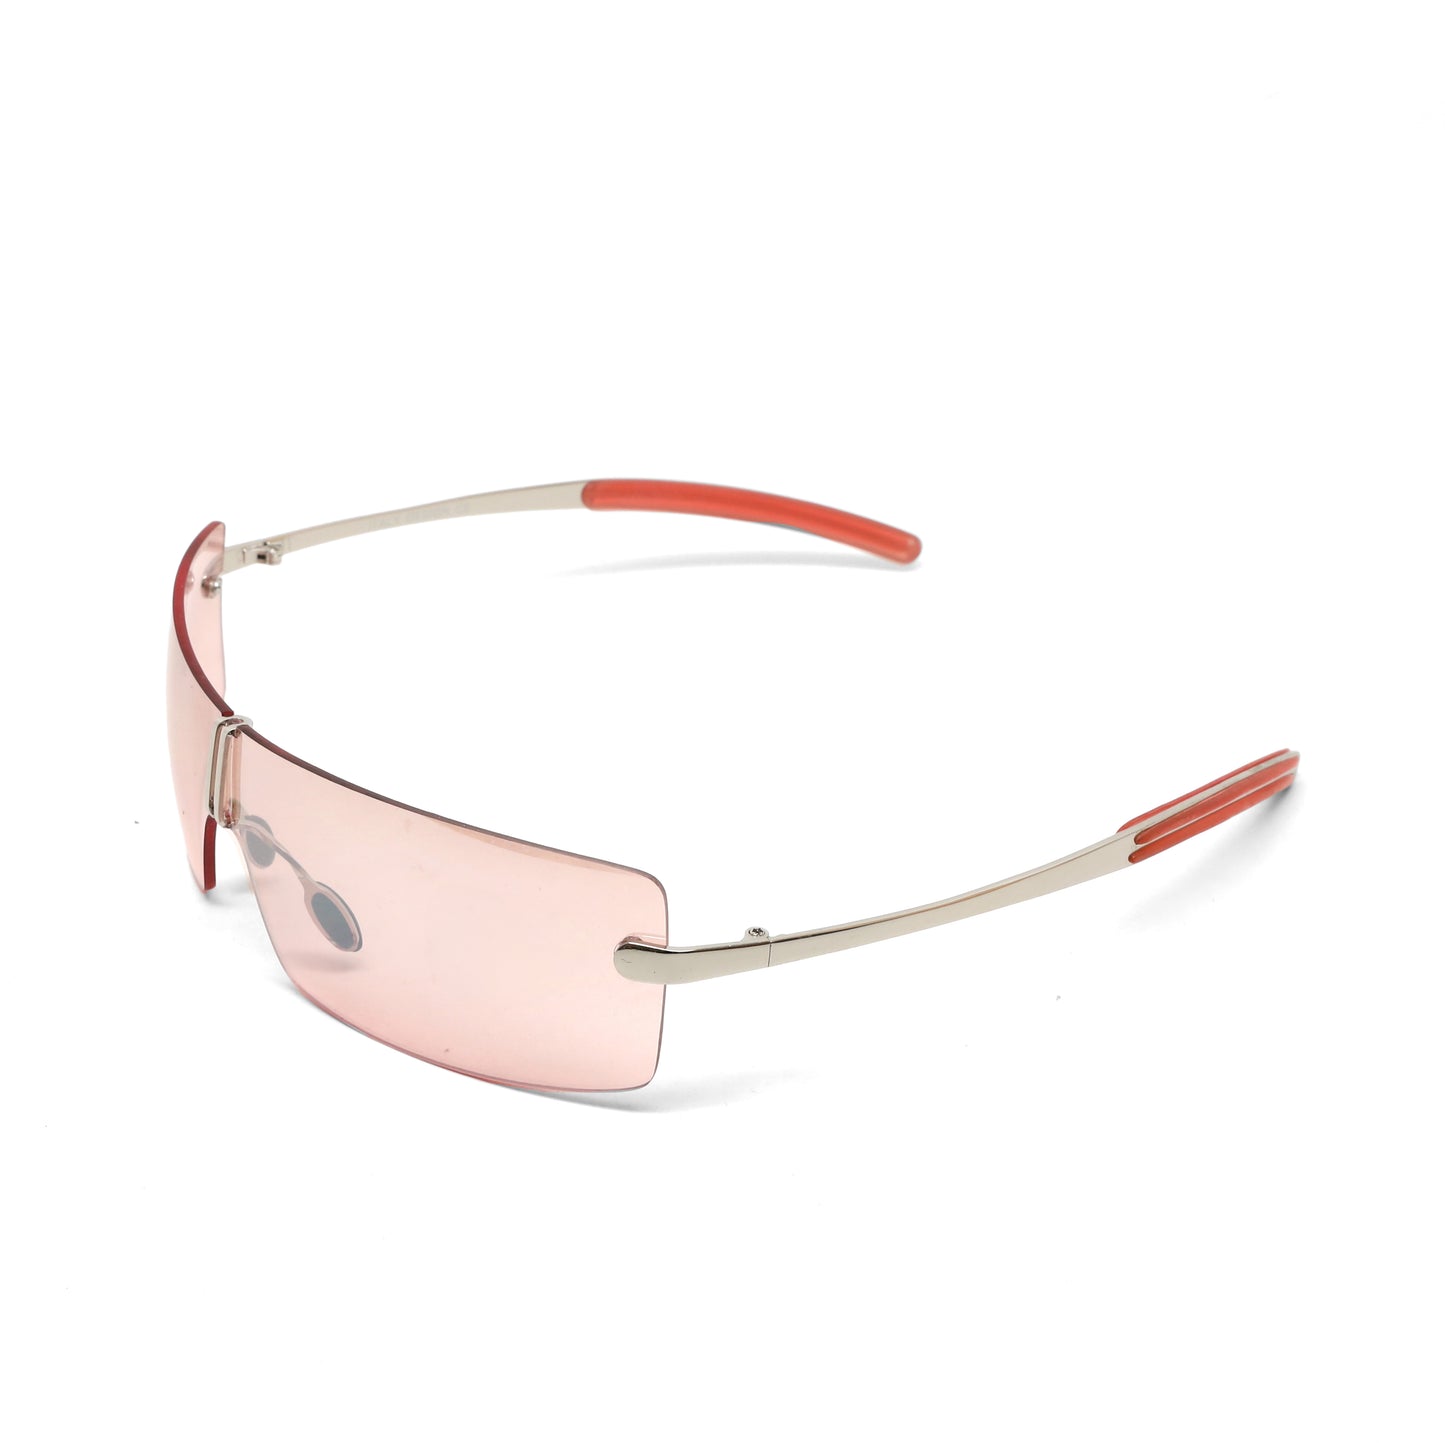 Deluxe Late 90s Vintage Frameless Wraparound Visor Sunglasses - Pink